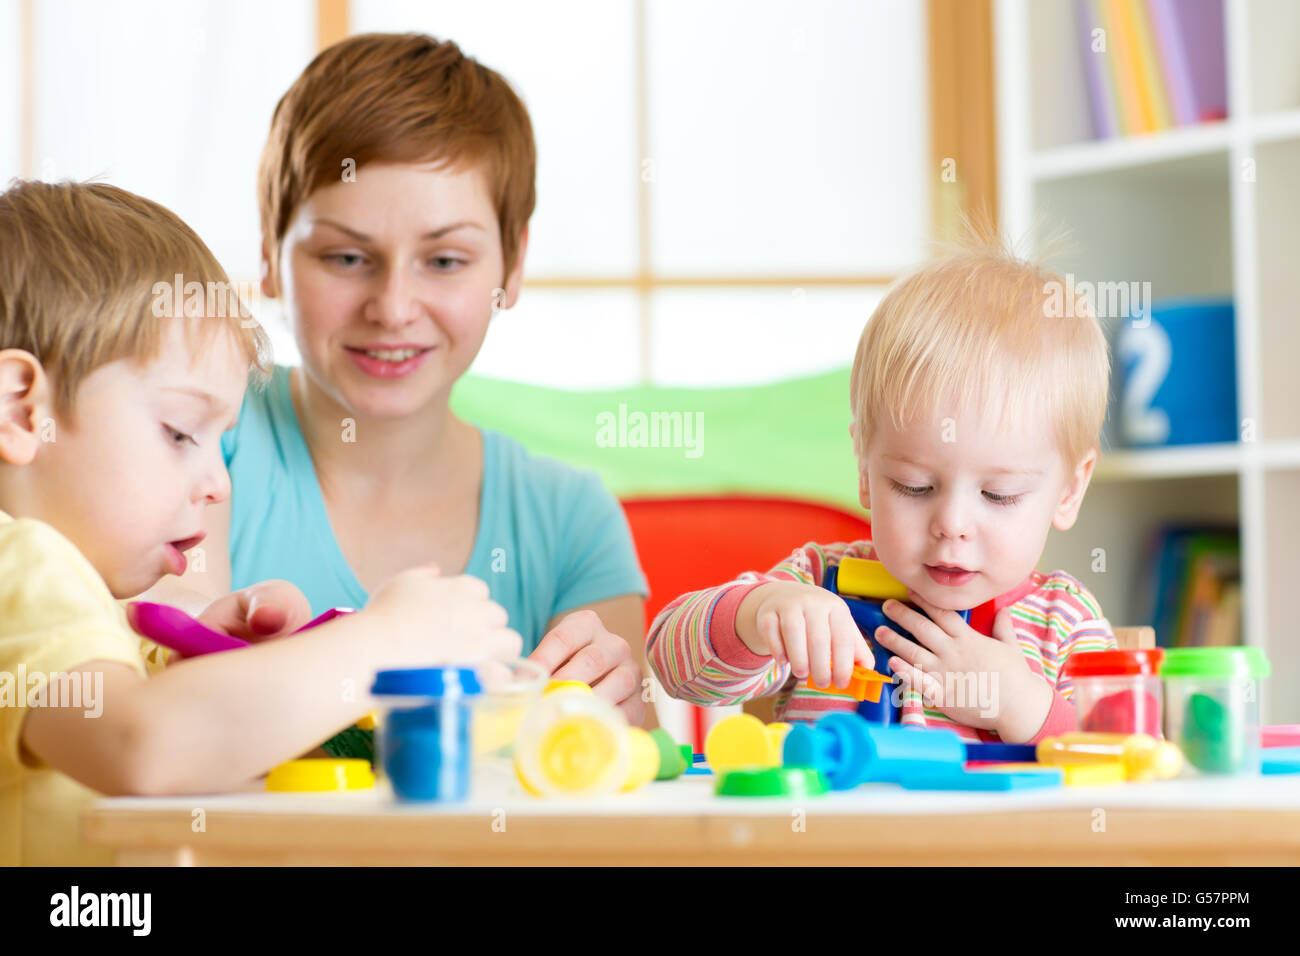 woman teaches children handcraft at kindergarten or playschool Stock Photo